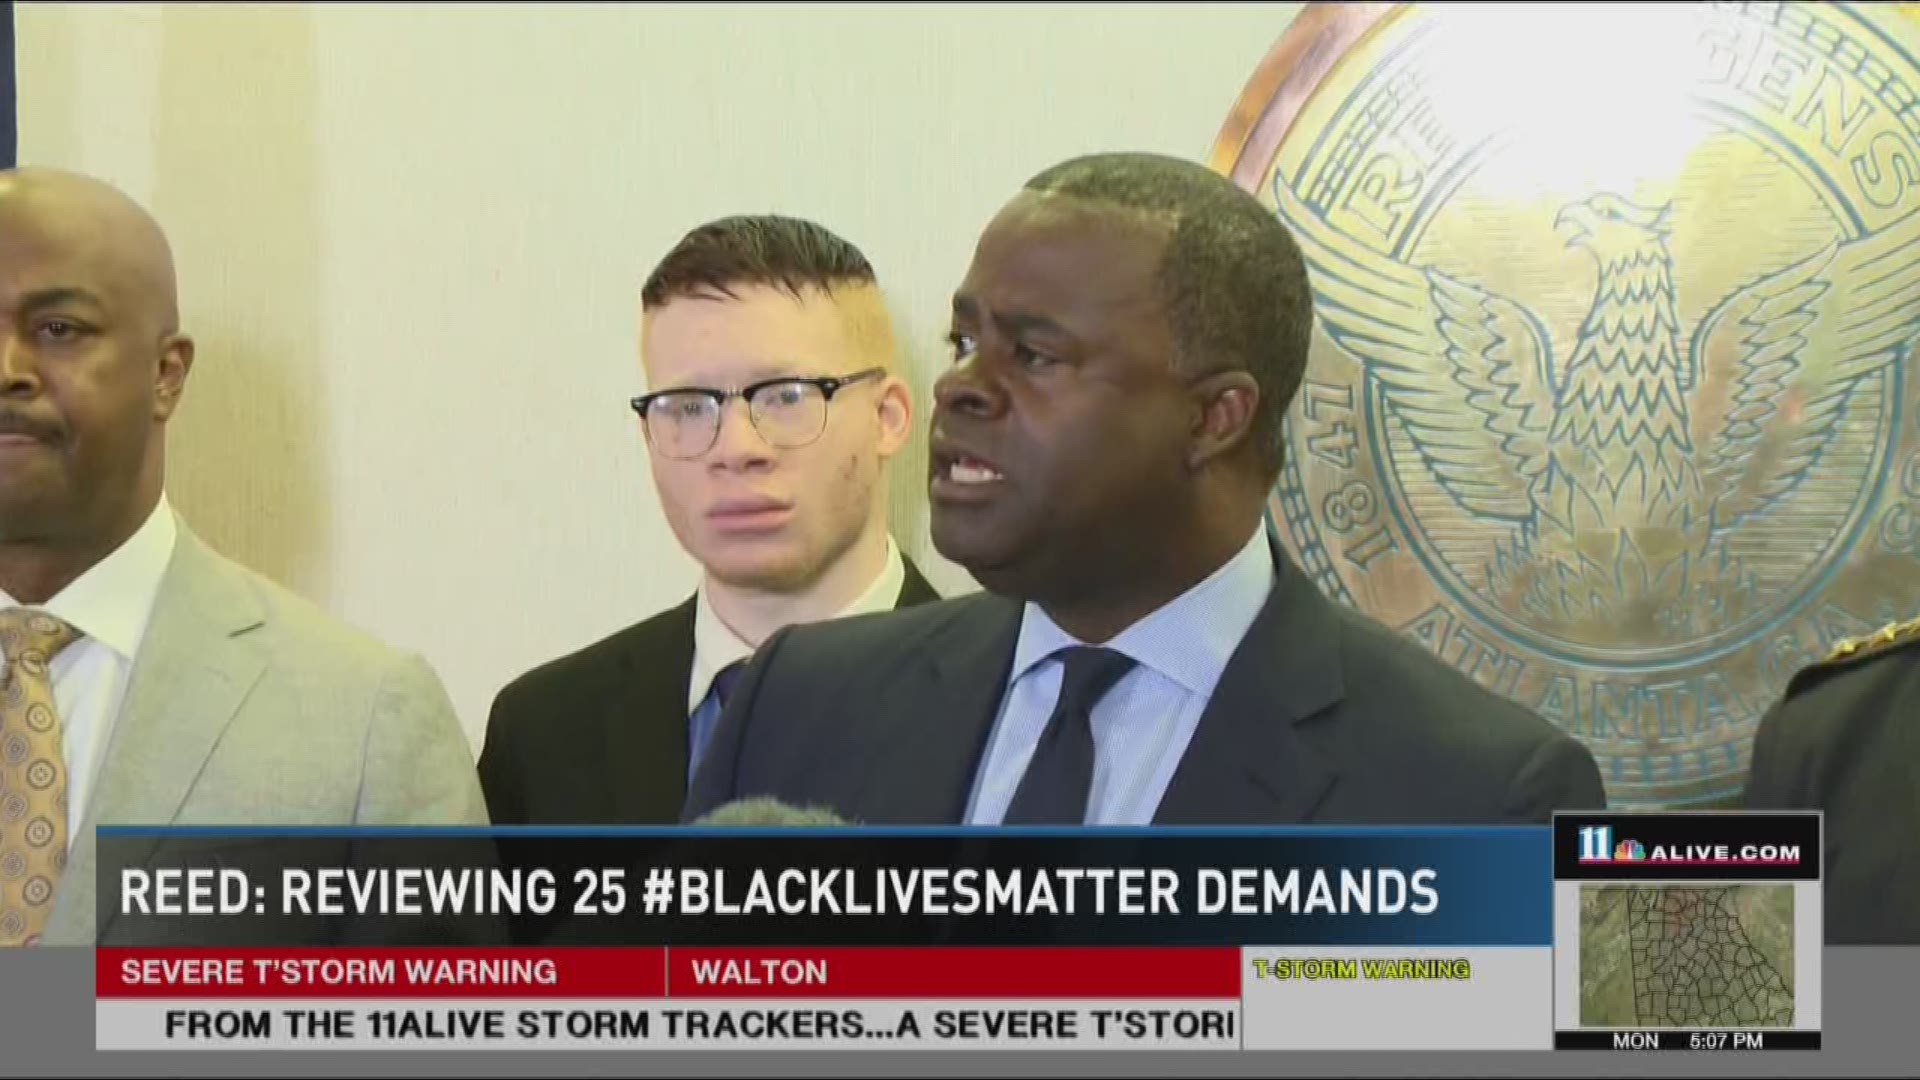 Mayor Reed: Reviewing 25 #BlackLivesMatter movement demands